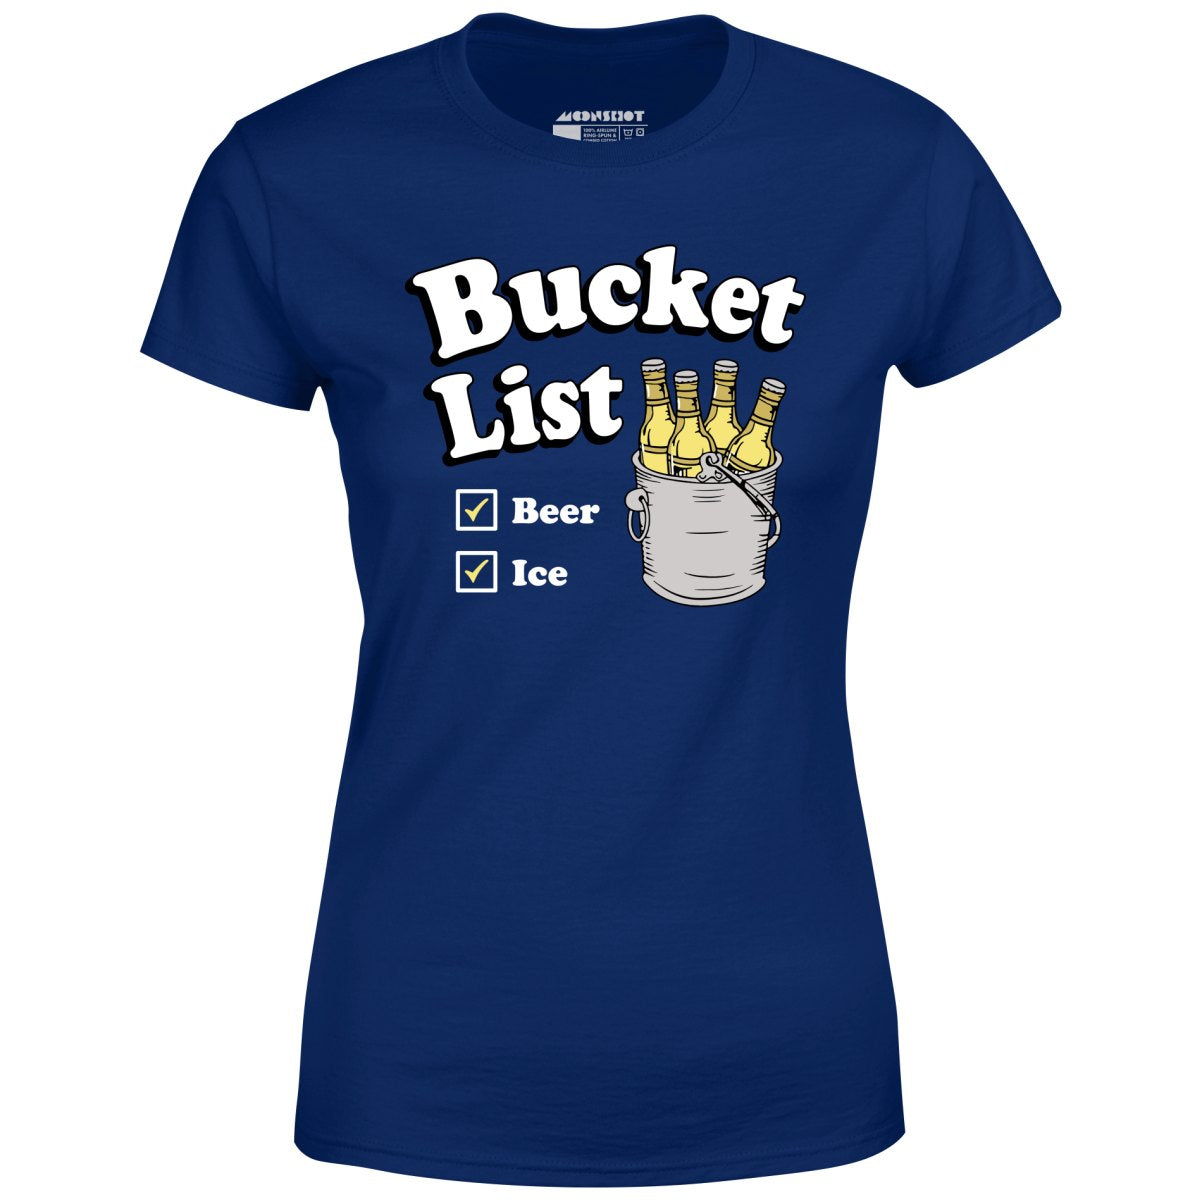 Bucket List - Women's T-Shirt